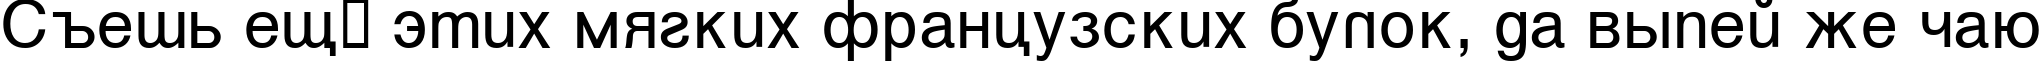 Пример написания шрифтом Vanta текста на русском